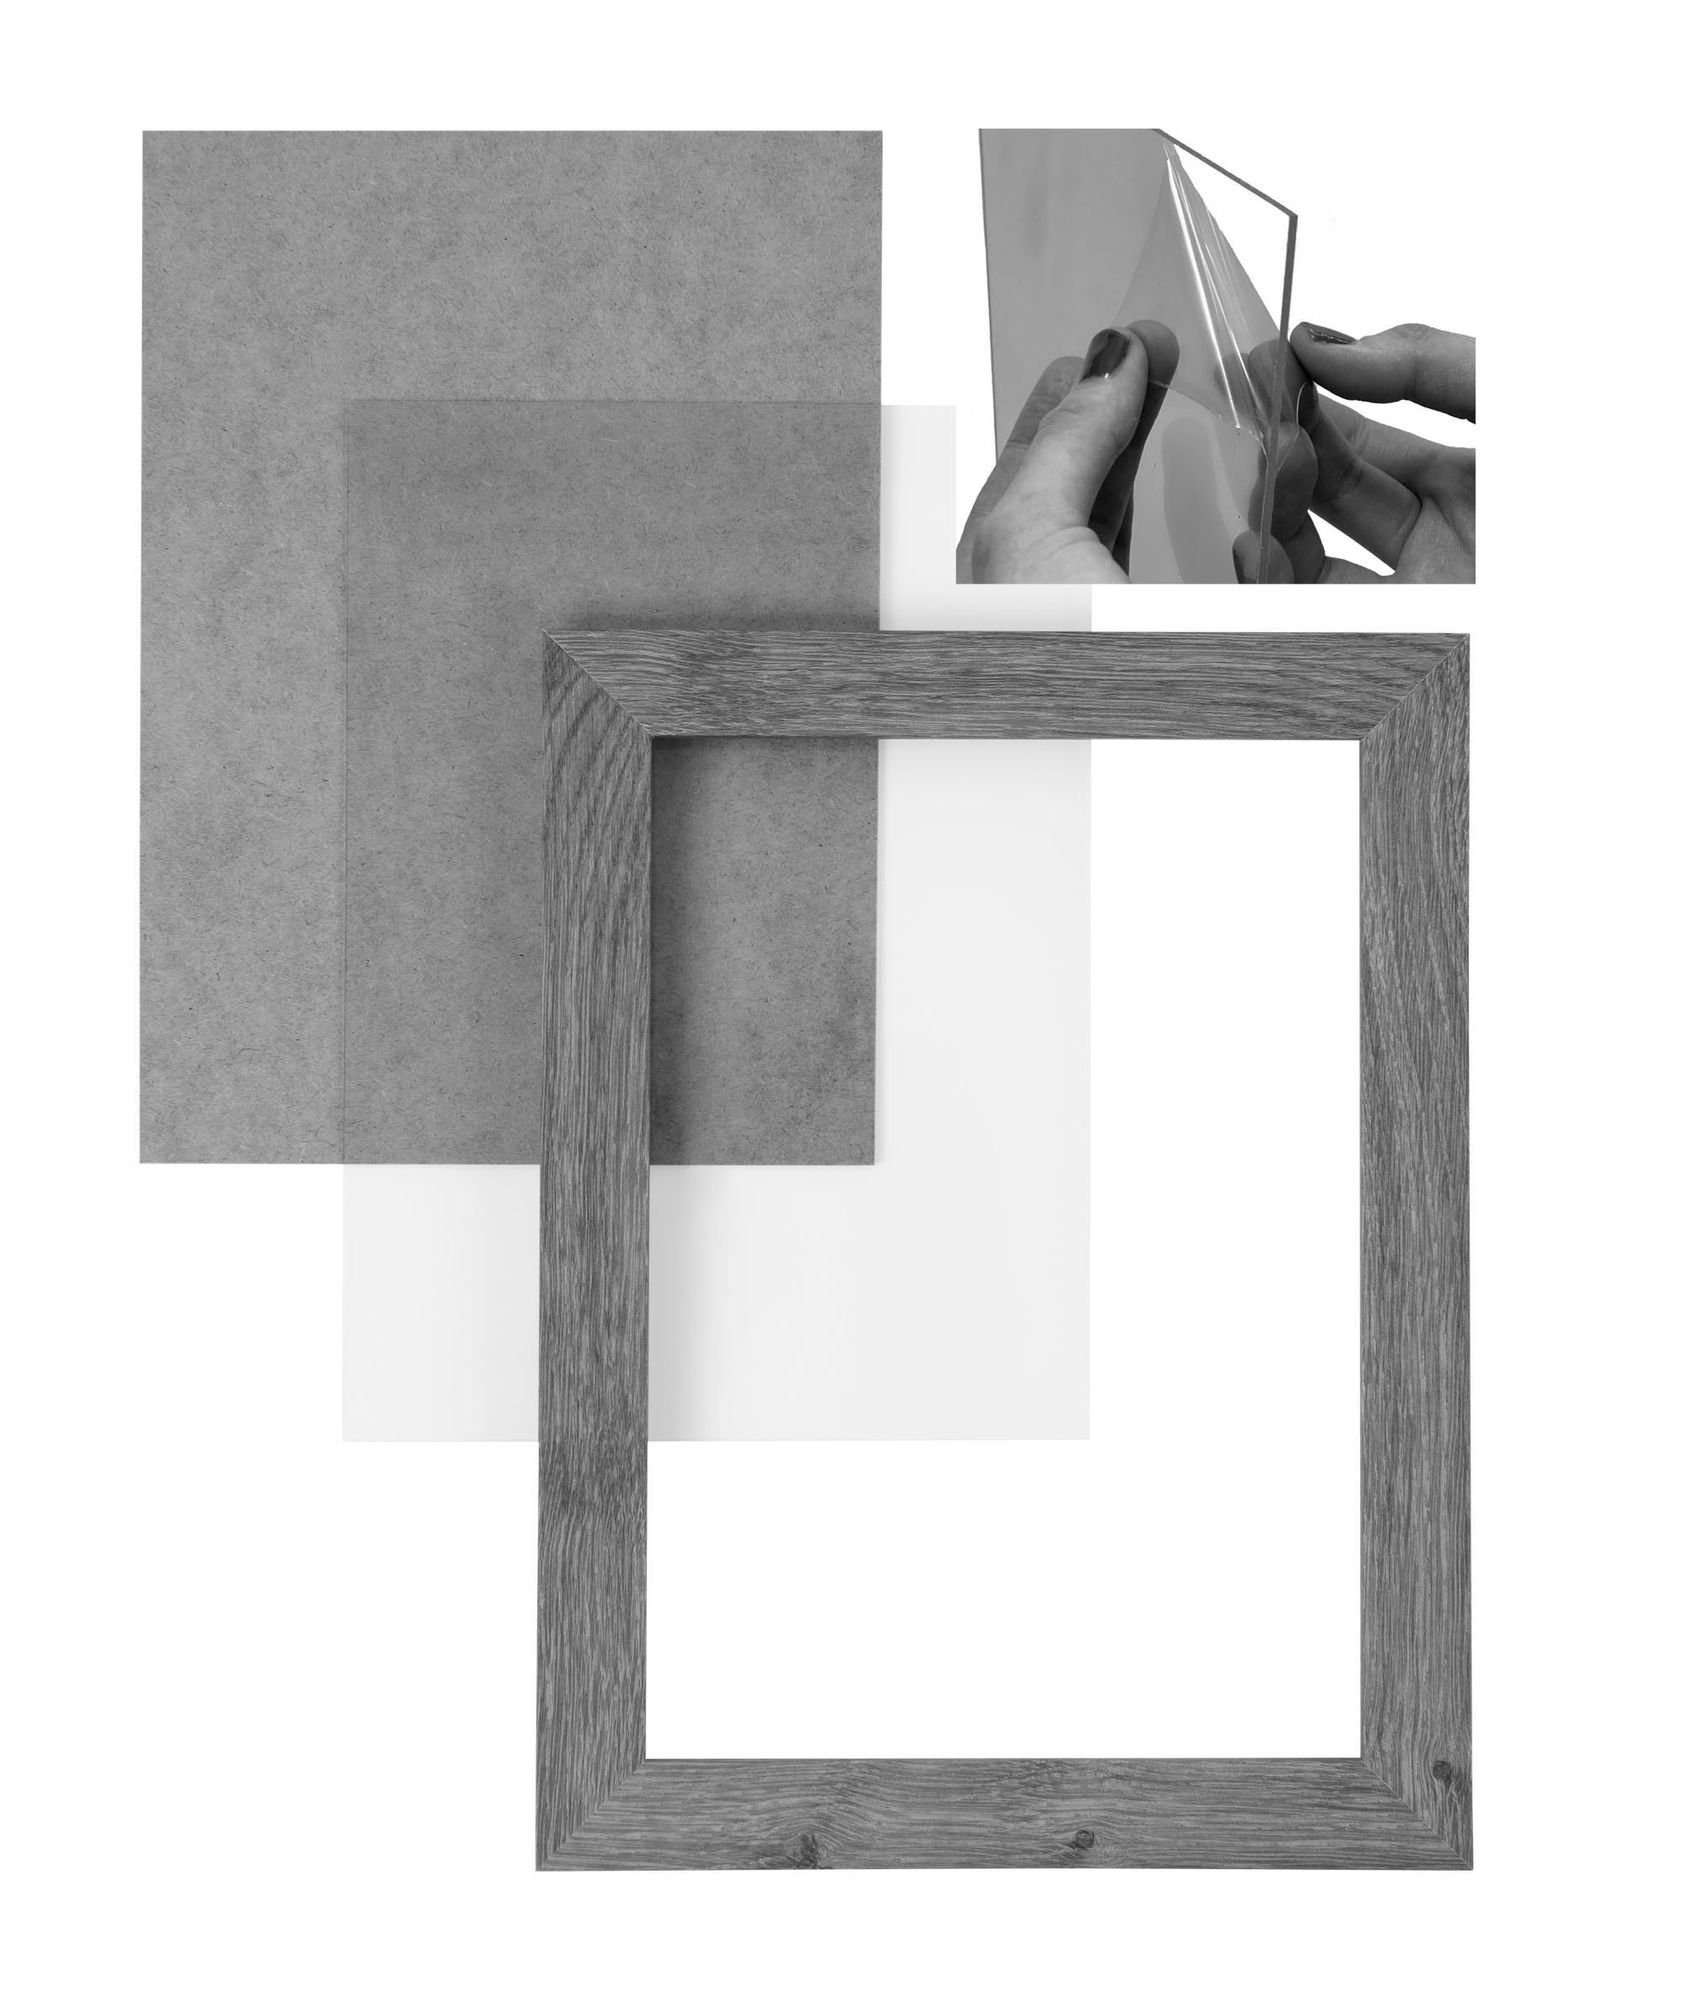 34x101 inkl. handgefertigt CLAMARO nach Holz eckiger Aufhänger Moderner Bilderrahmen Rückwand FSC® in 'Collage' Clamaro MDF und Maß eiche Bilderrahmen Acrylglas, altholz Rahmen